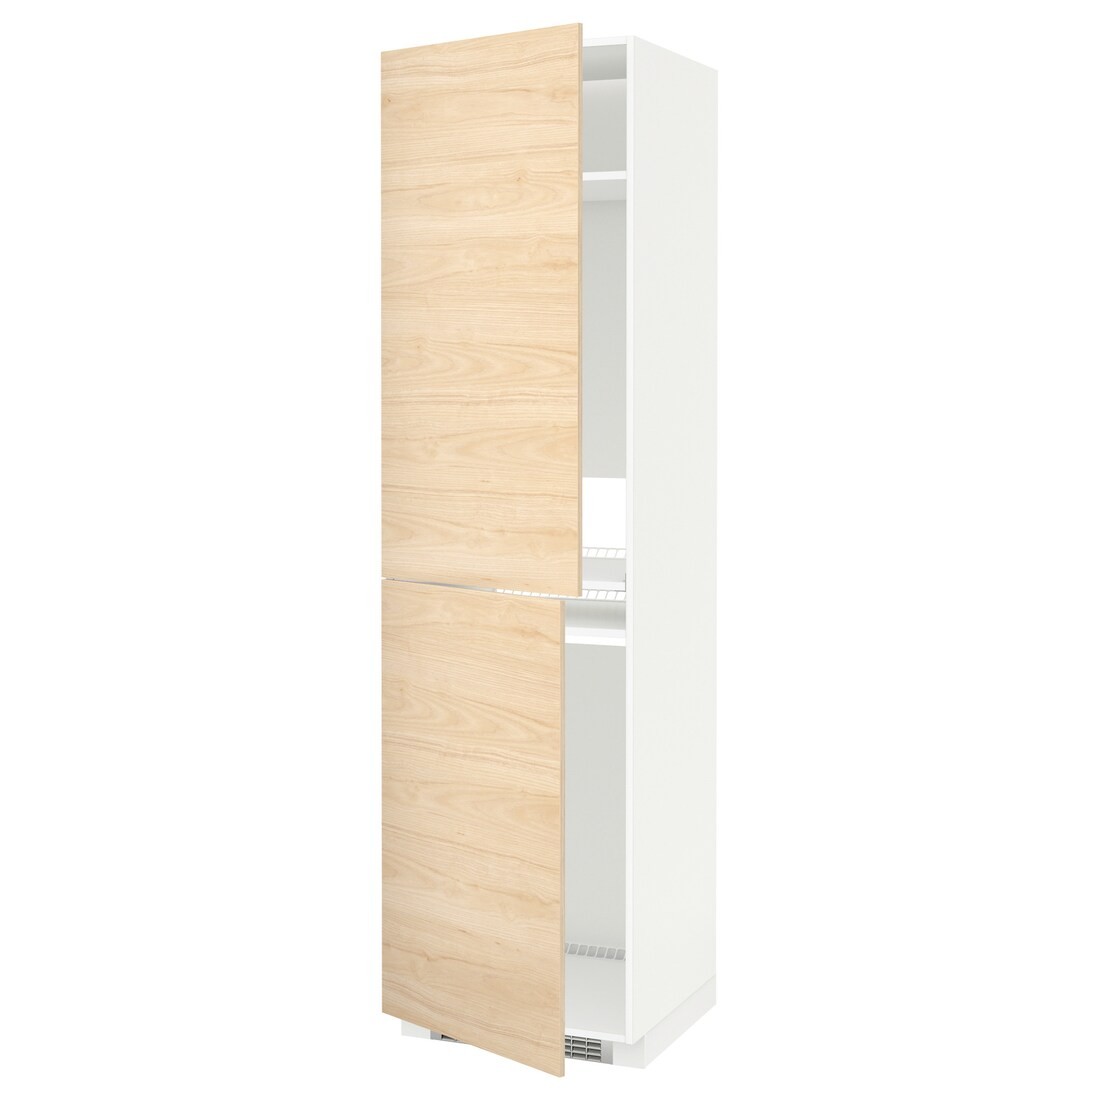 IKEA METOD МЕТОД Высокий шкаф для холодильника / морозильника, белый / Askersund узор светлый ясень, 60x60x220 см 29215806 292.158.06